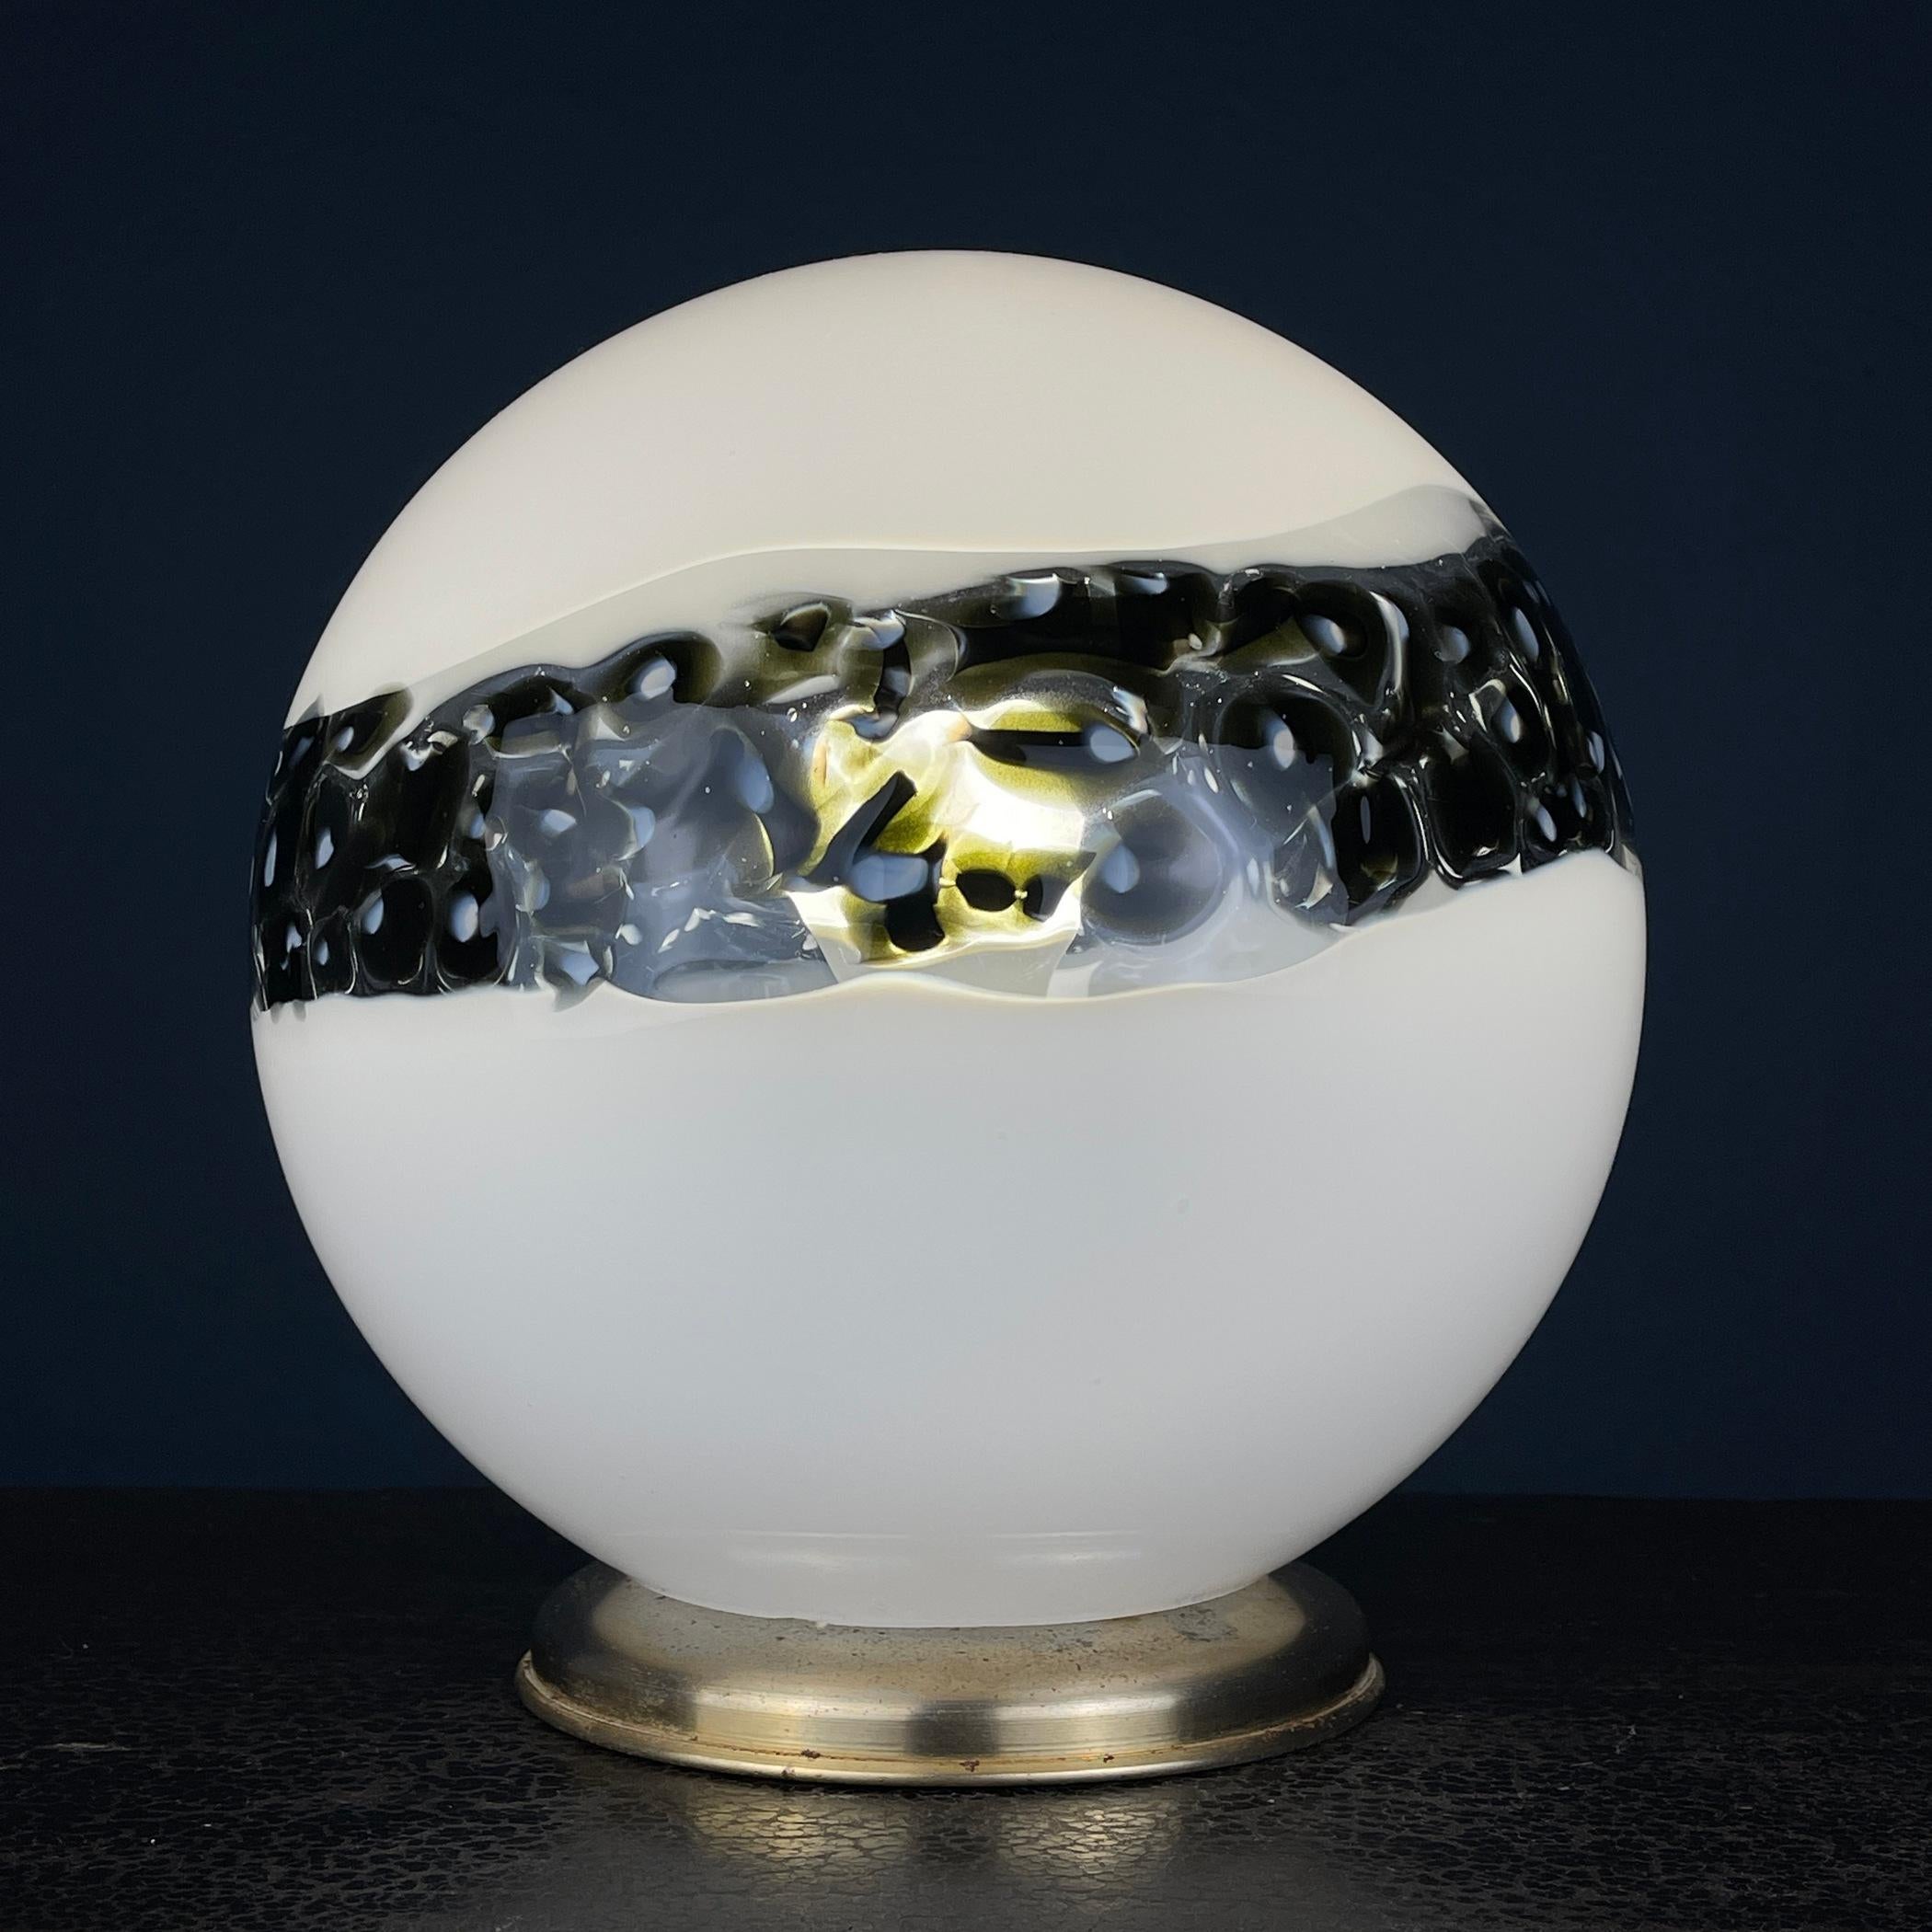 Il s'agit d'une splendide lampe de table en verre de Murano provenant d'Italie, fabriquée dans les années 1970 au cours de l'ère moderne du milieu du siècle. Cette lampe au design unique et élégant est dotée d'un abat-jour sphérique en verre de